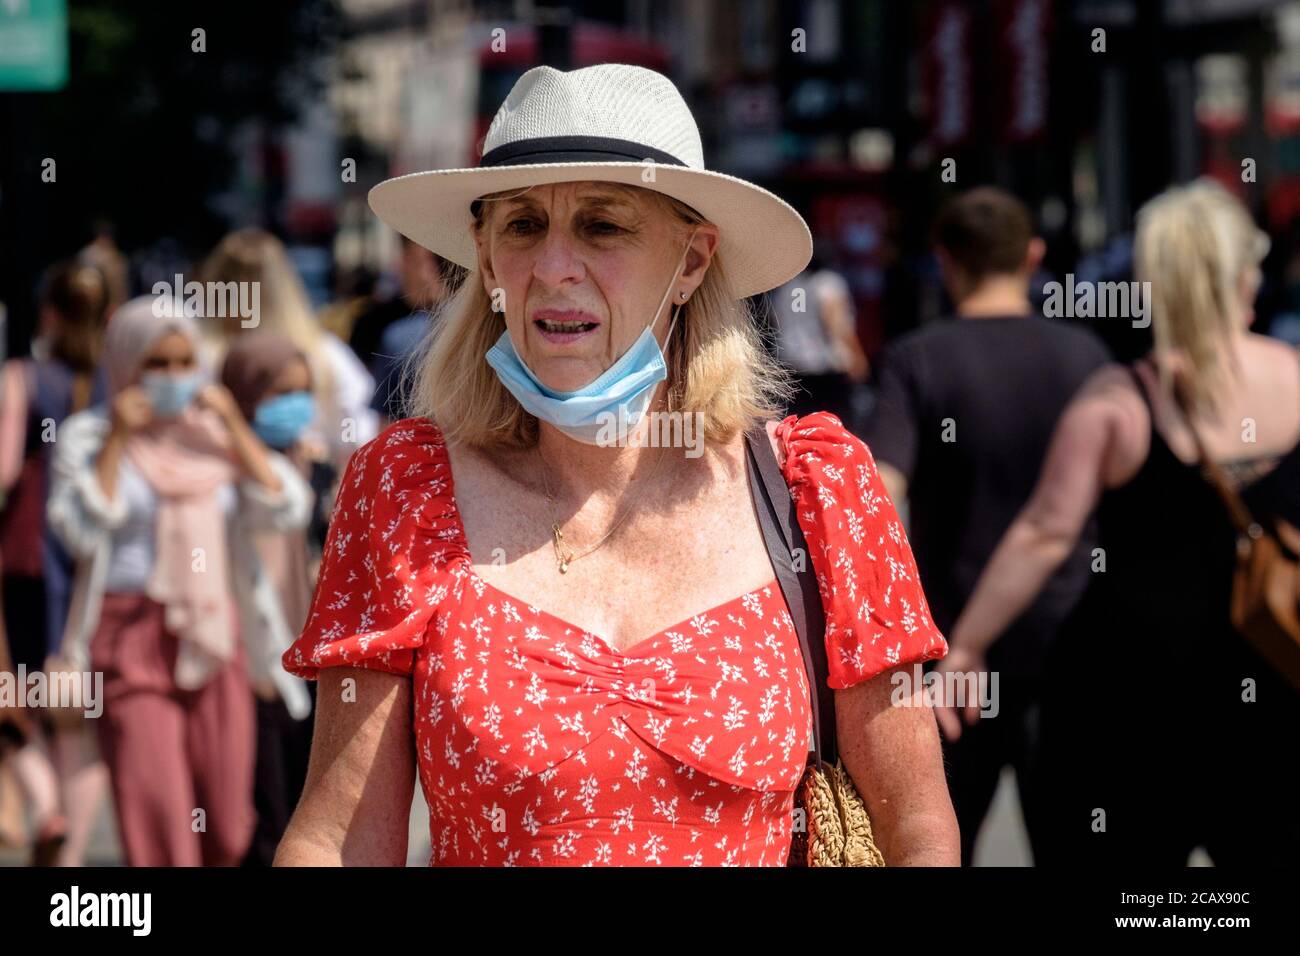 Eine Frau mittleren Alters, die Gesichtsbedeckung unter ihrem Kinn trägt, geht auf der geschäftigen Londoner Straße. Stockfoto